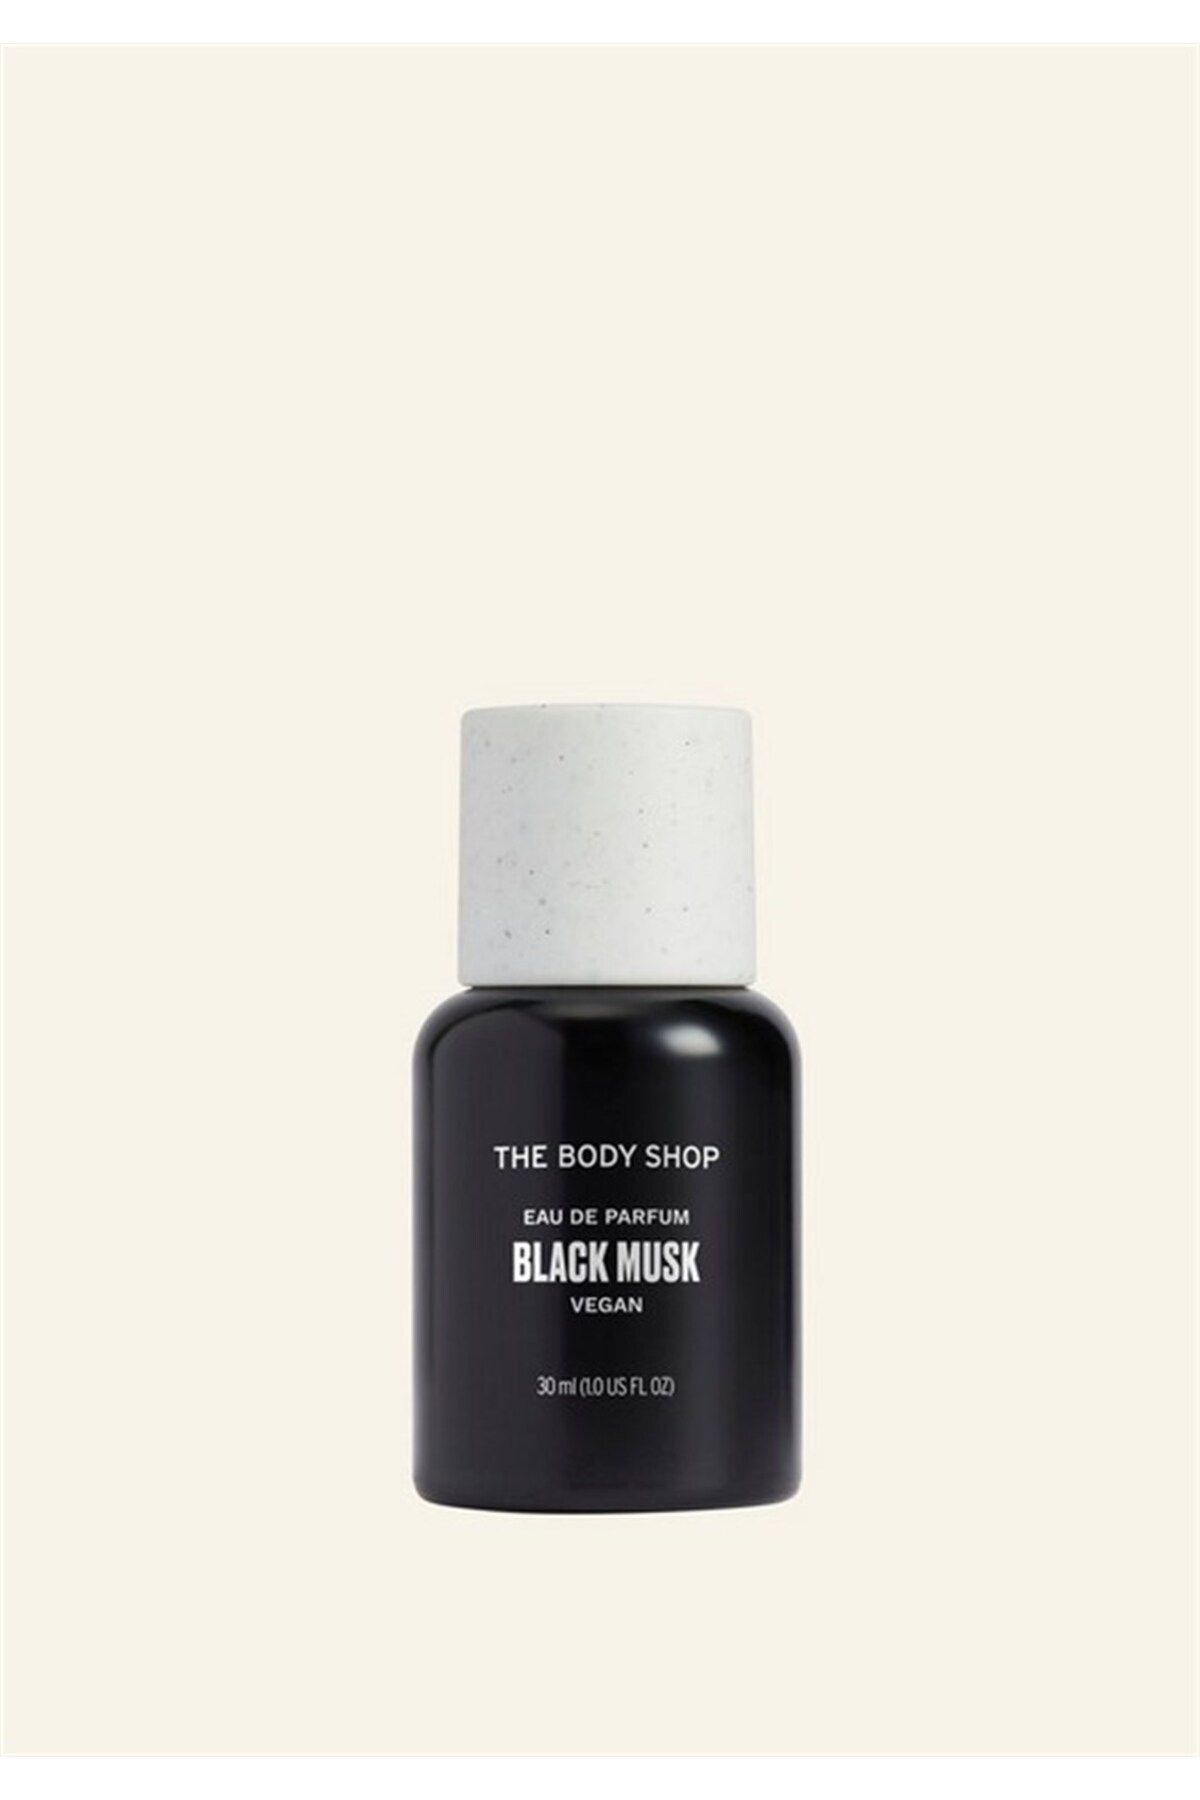 THE BODY SHOP Black Musk Eau De Parfum 30 ml